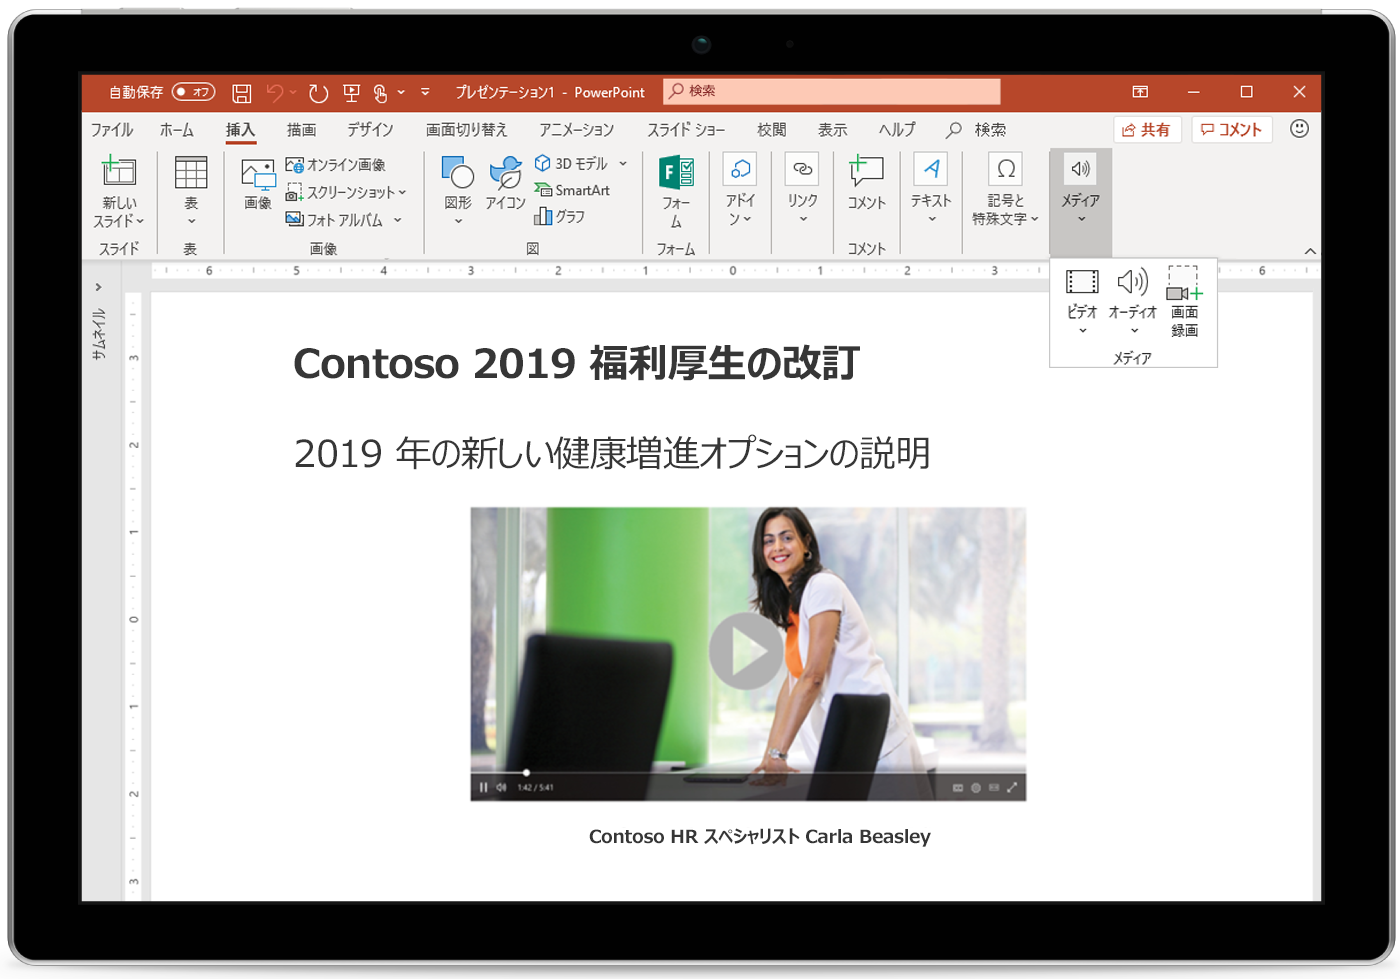 PowerPoint のスライドが表示されたタブレットの画像。